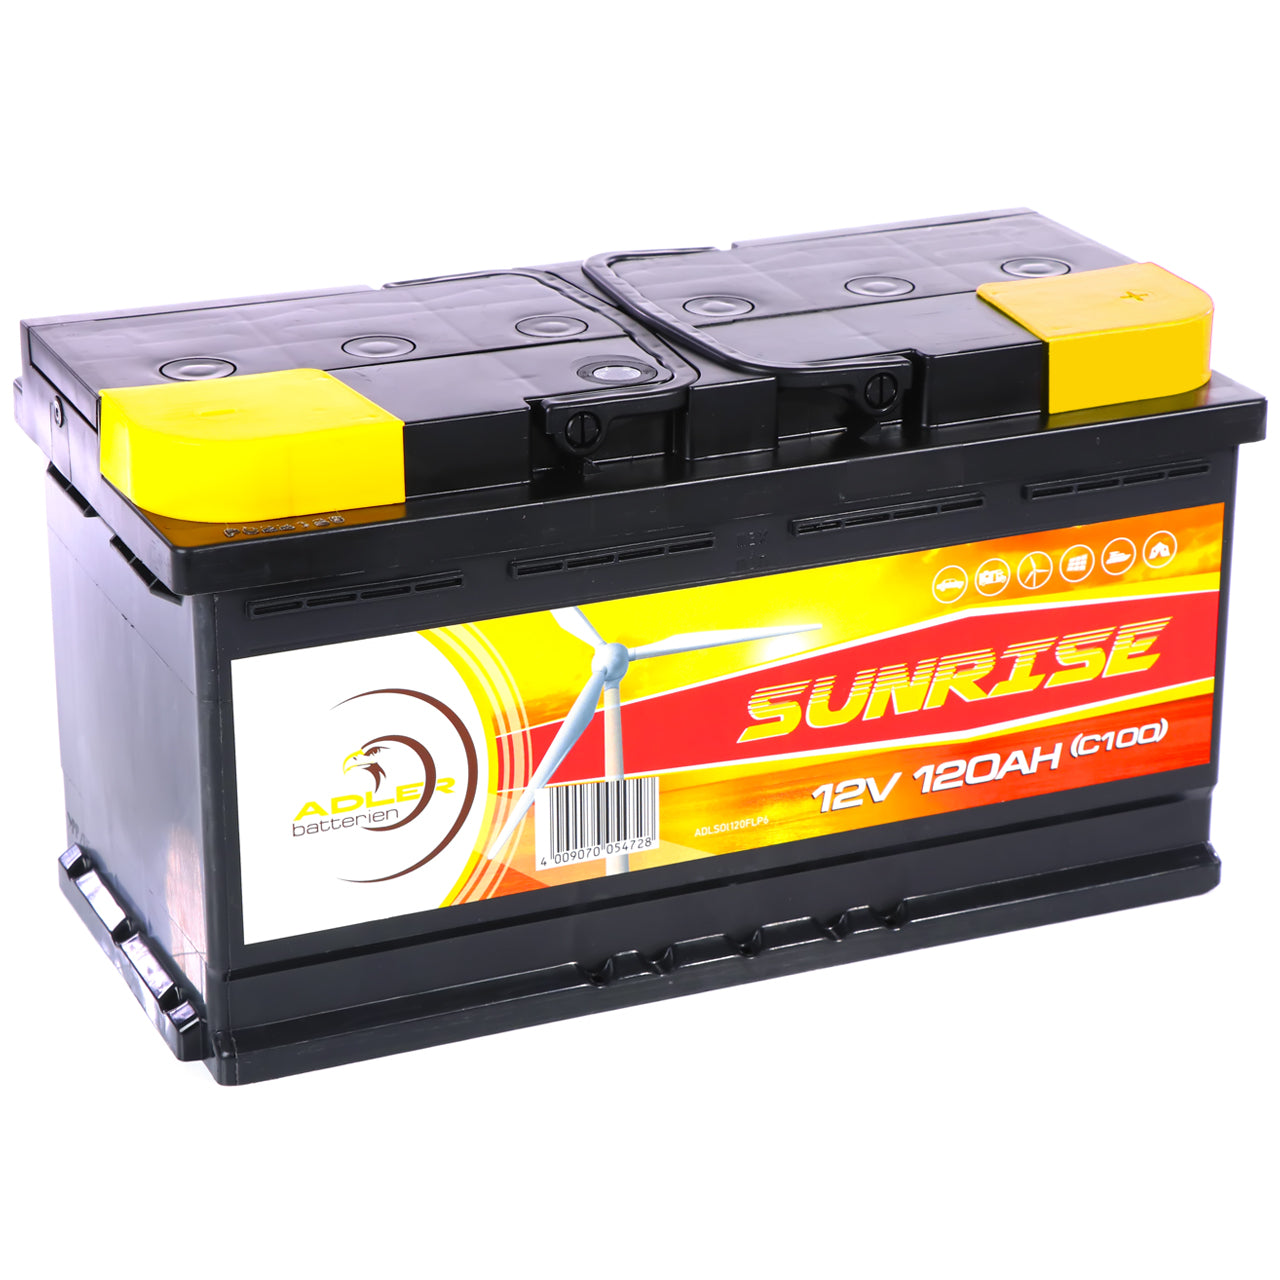 Solarbatterie 120Ah 12V von BIG für Wohnmobil, Boot